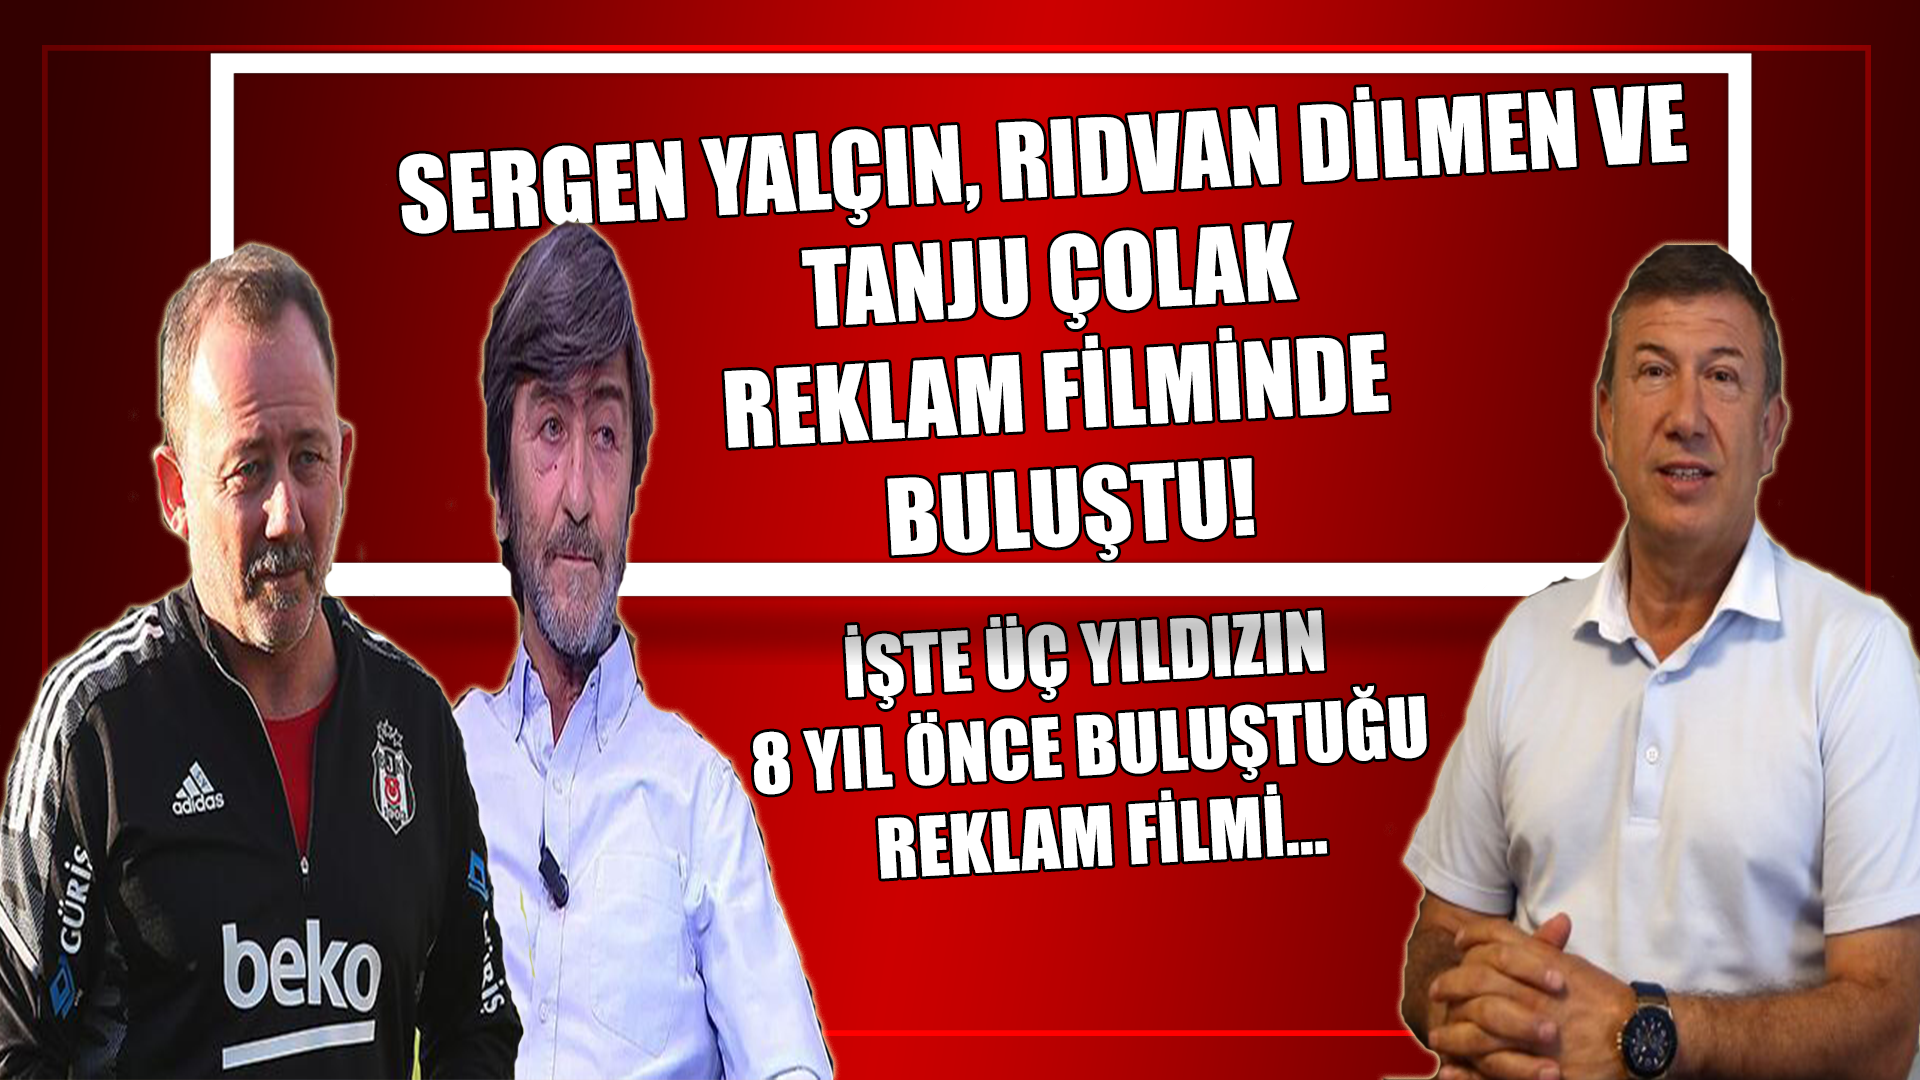 Sergen Yalçın, Rıdvan Dilmen ve Tanju Çolak filminde buluşmuştu!